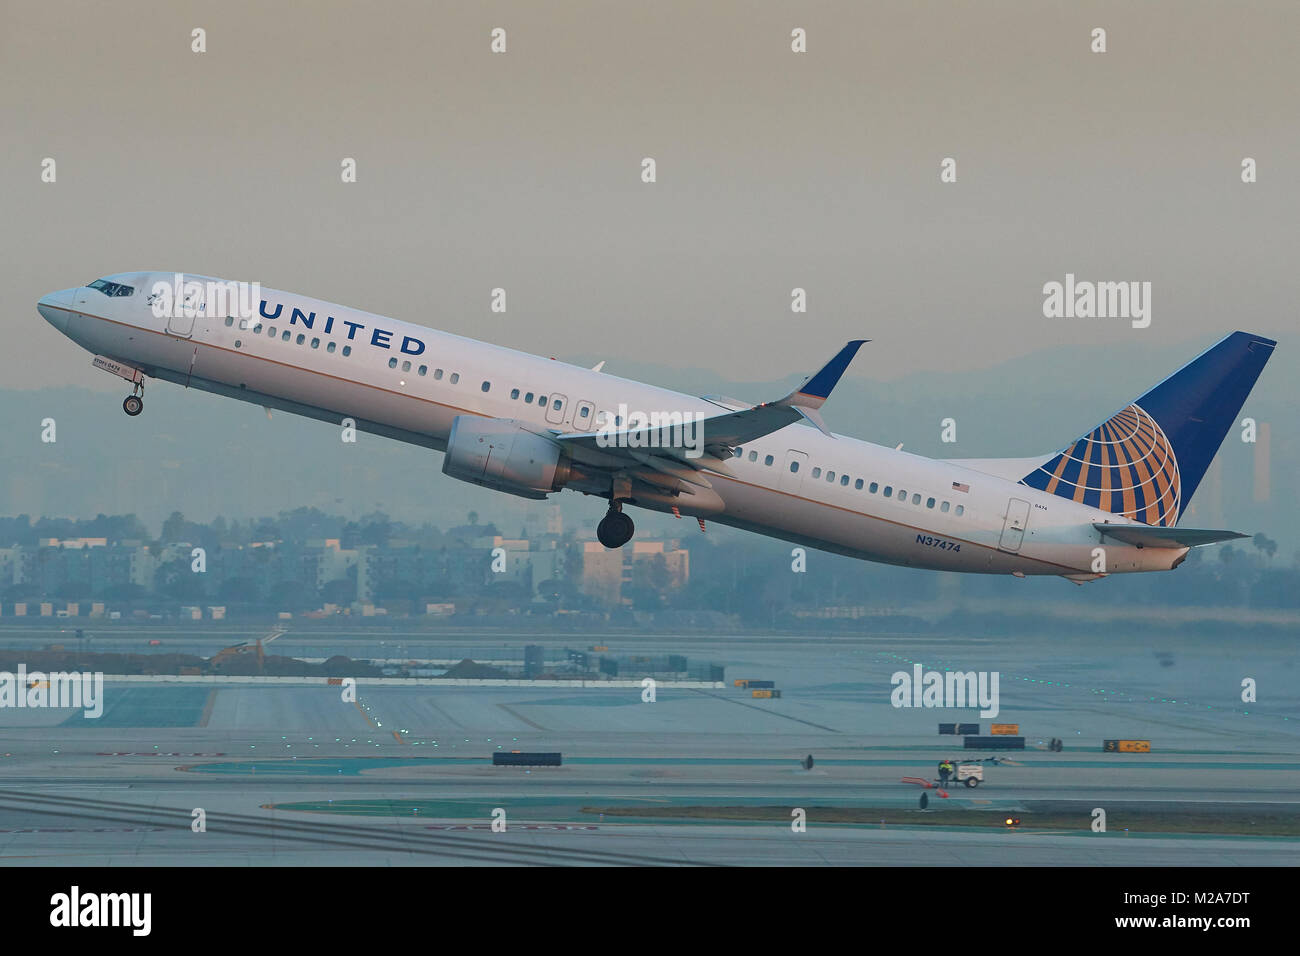 United Airlines Boeing 737-900vom Runway25 am internationalen Flughafen von  Los Angeles, Kalifornien, USA Stockfotografie - Alamy